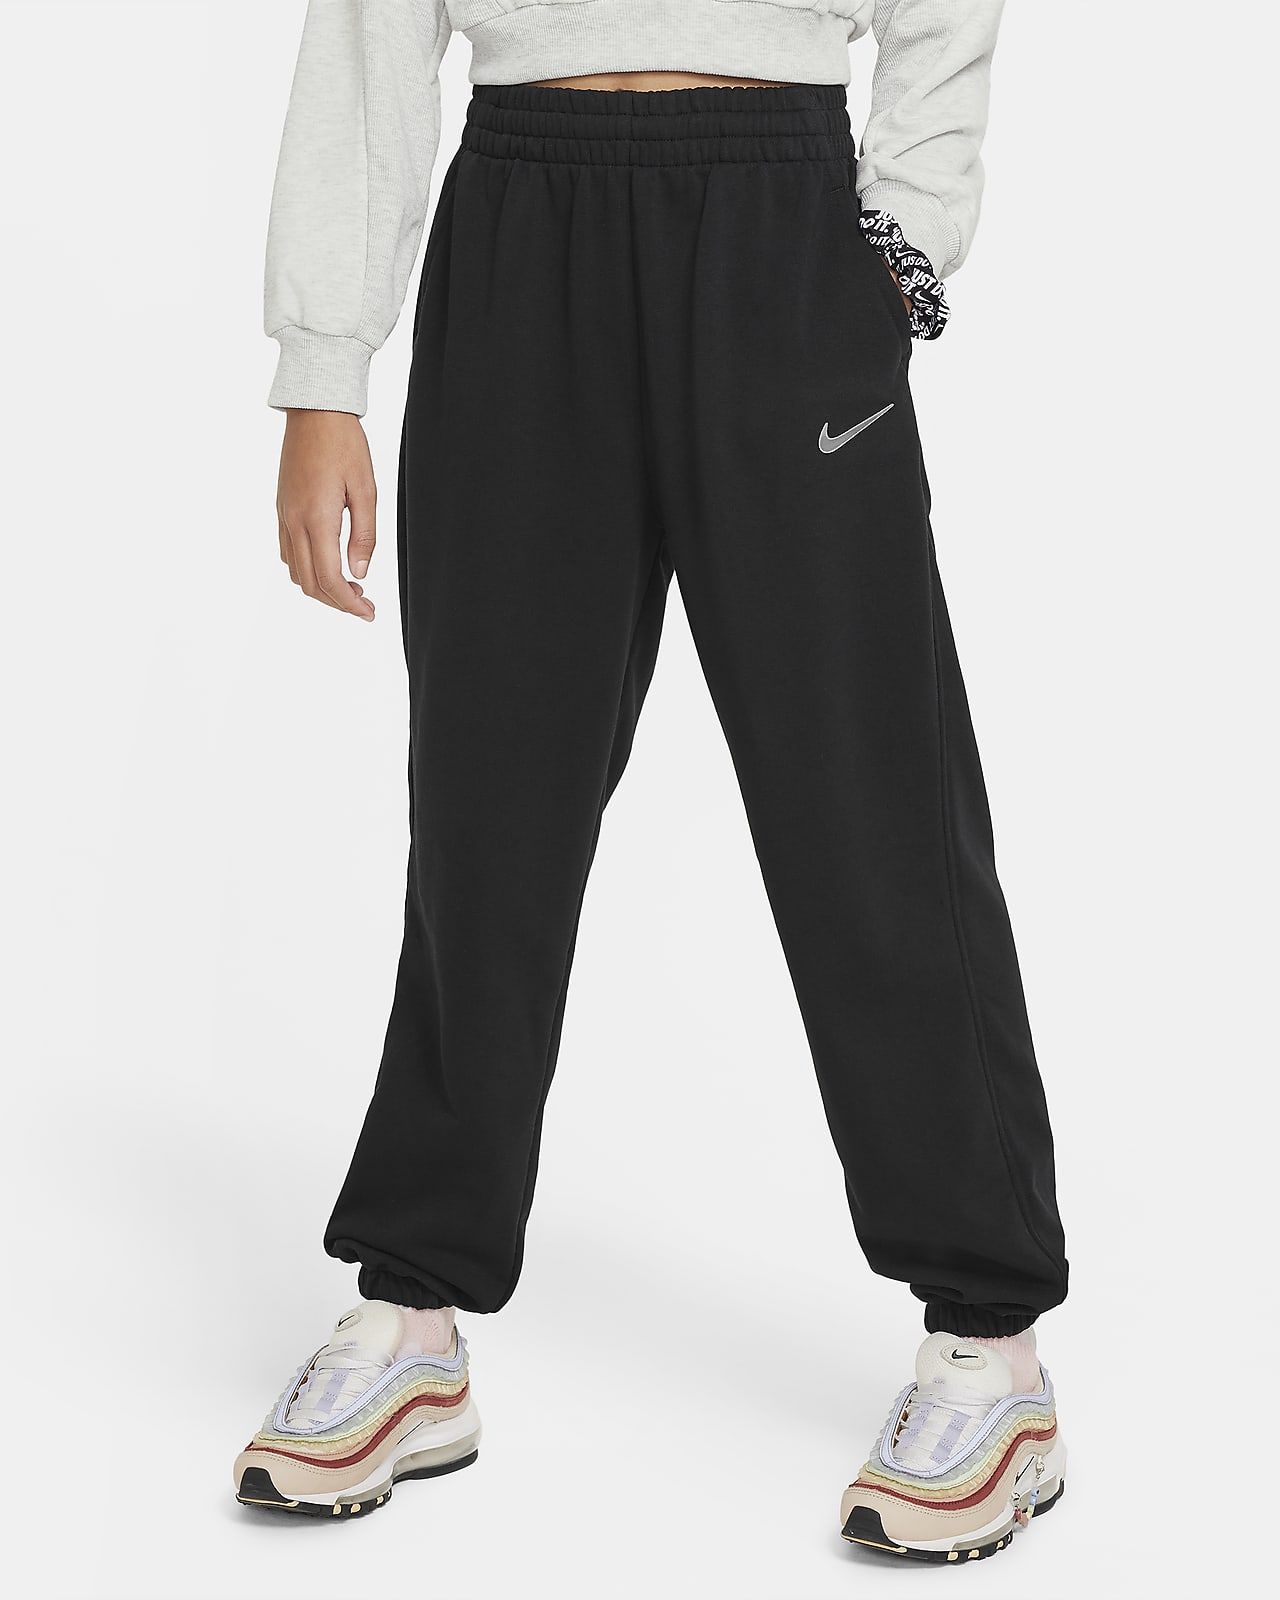 Pantalon Nike Sportswear Trend pour homme. Nike LU